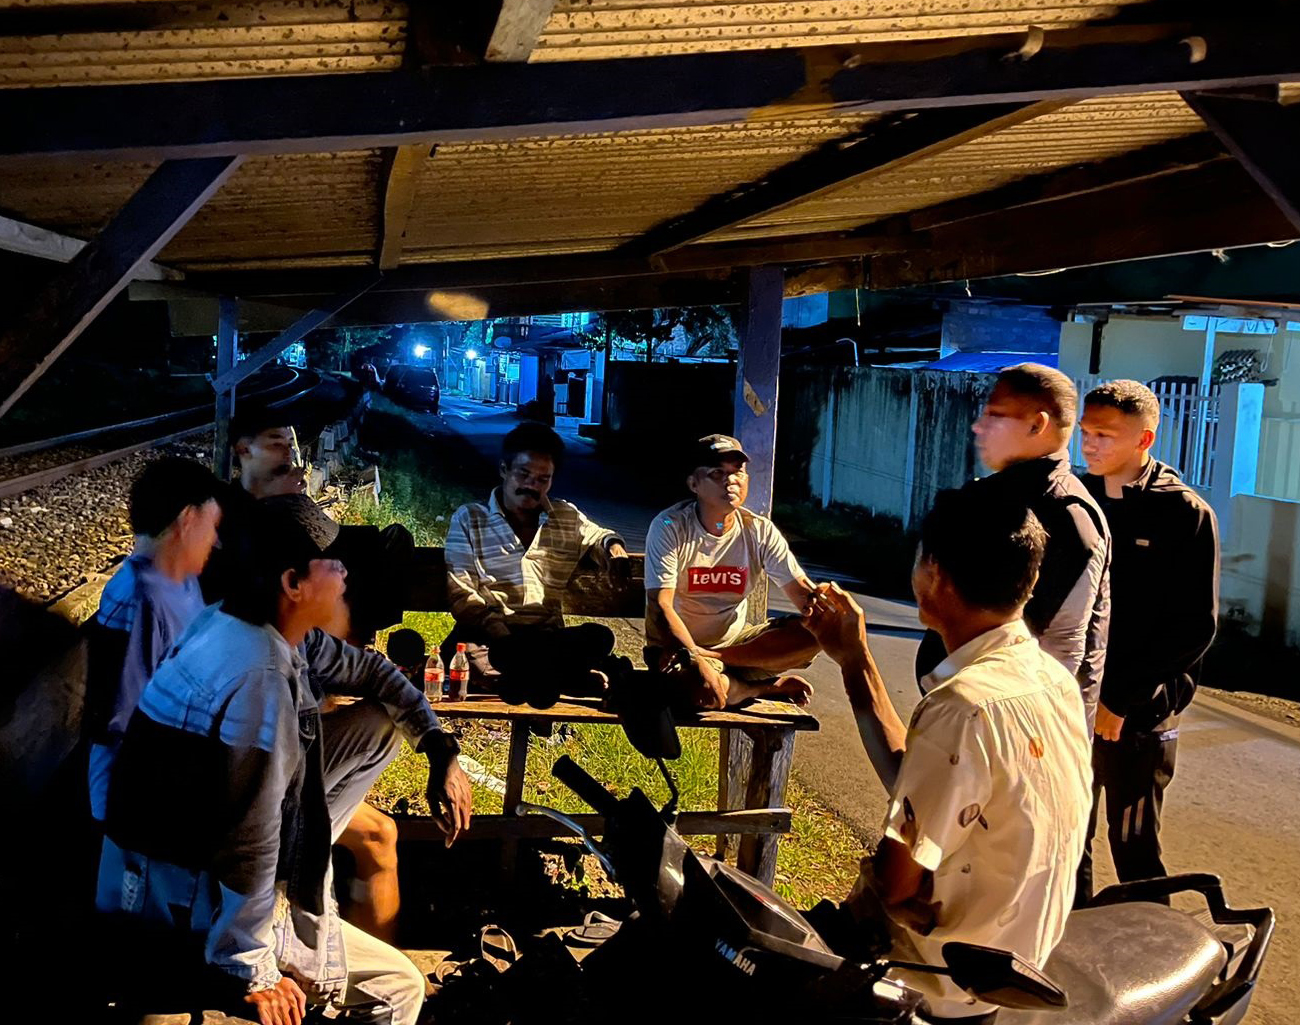 Polisi Patroli ke Gang-gang Kelurahan Gunung Gajah Kota Lahat, Imbau Aktifkan Poskamling dan Pasang CCTV